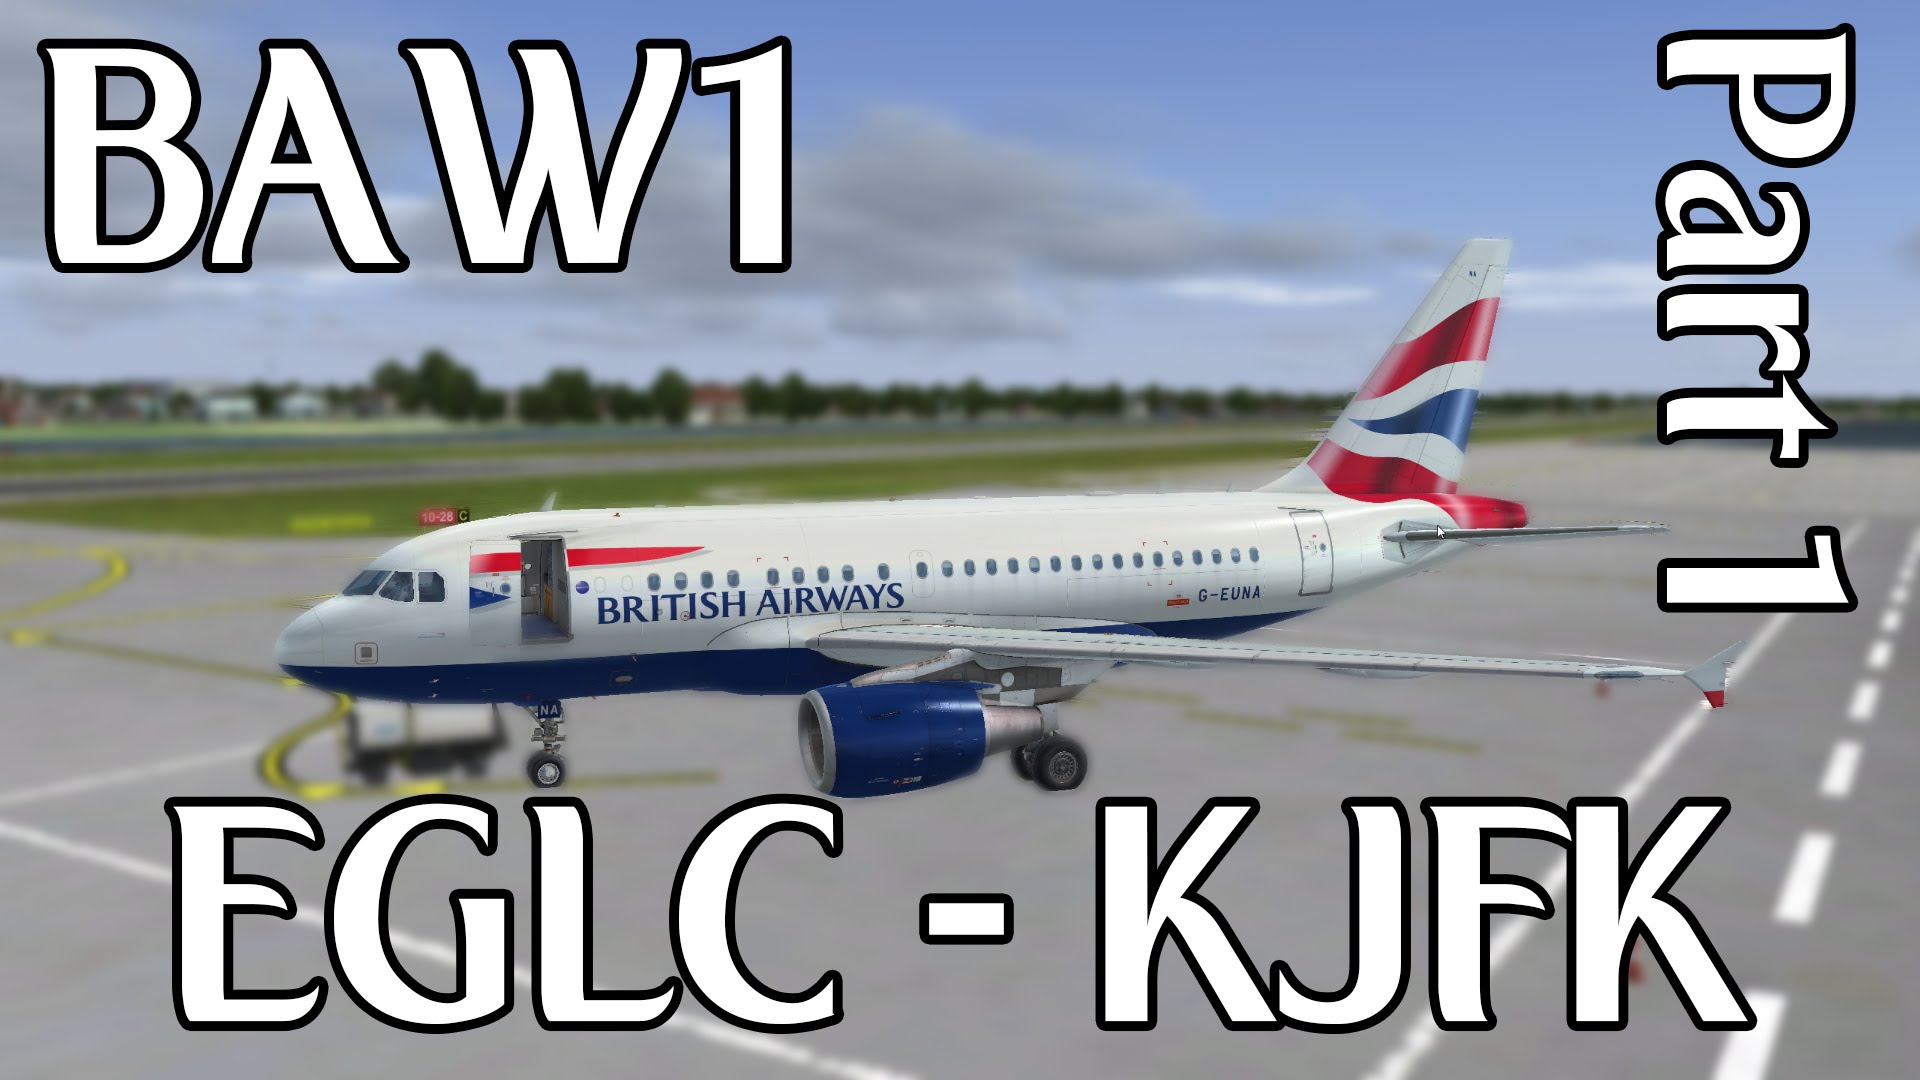 Prepar3D - EGLC to KJFK - BAW1 - Full Flight [PART 1]